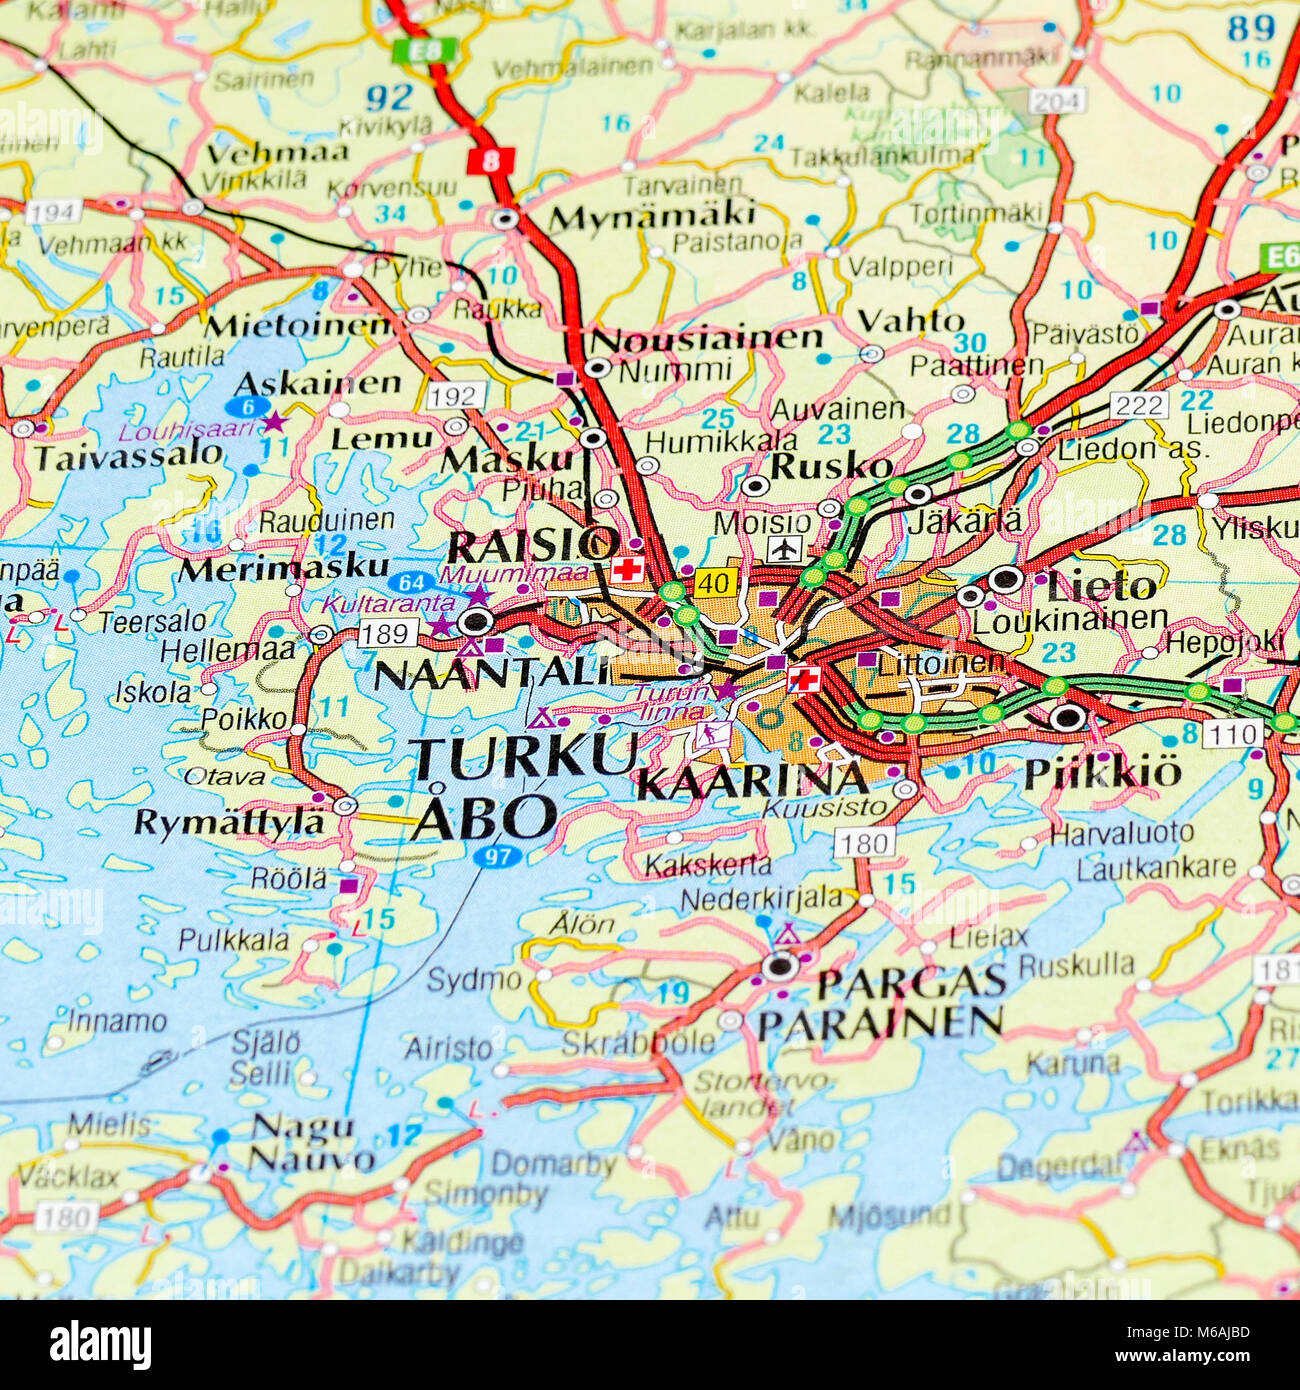 Turku on a map Stock Photo